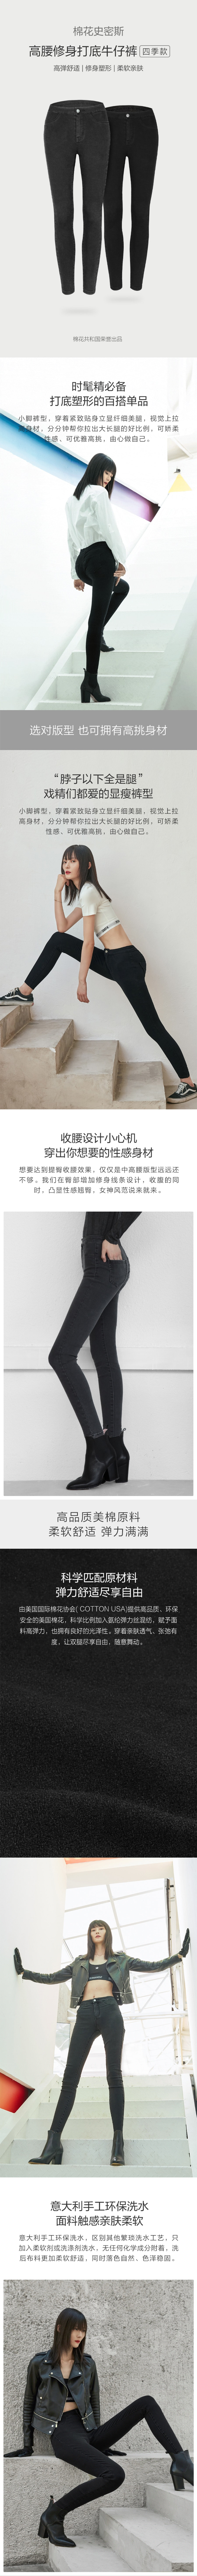 COTTONSMITH women's stretch jeans black 25